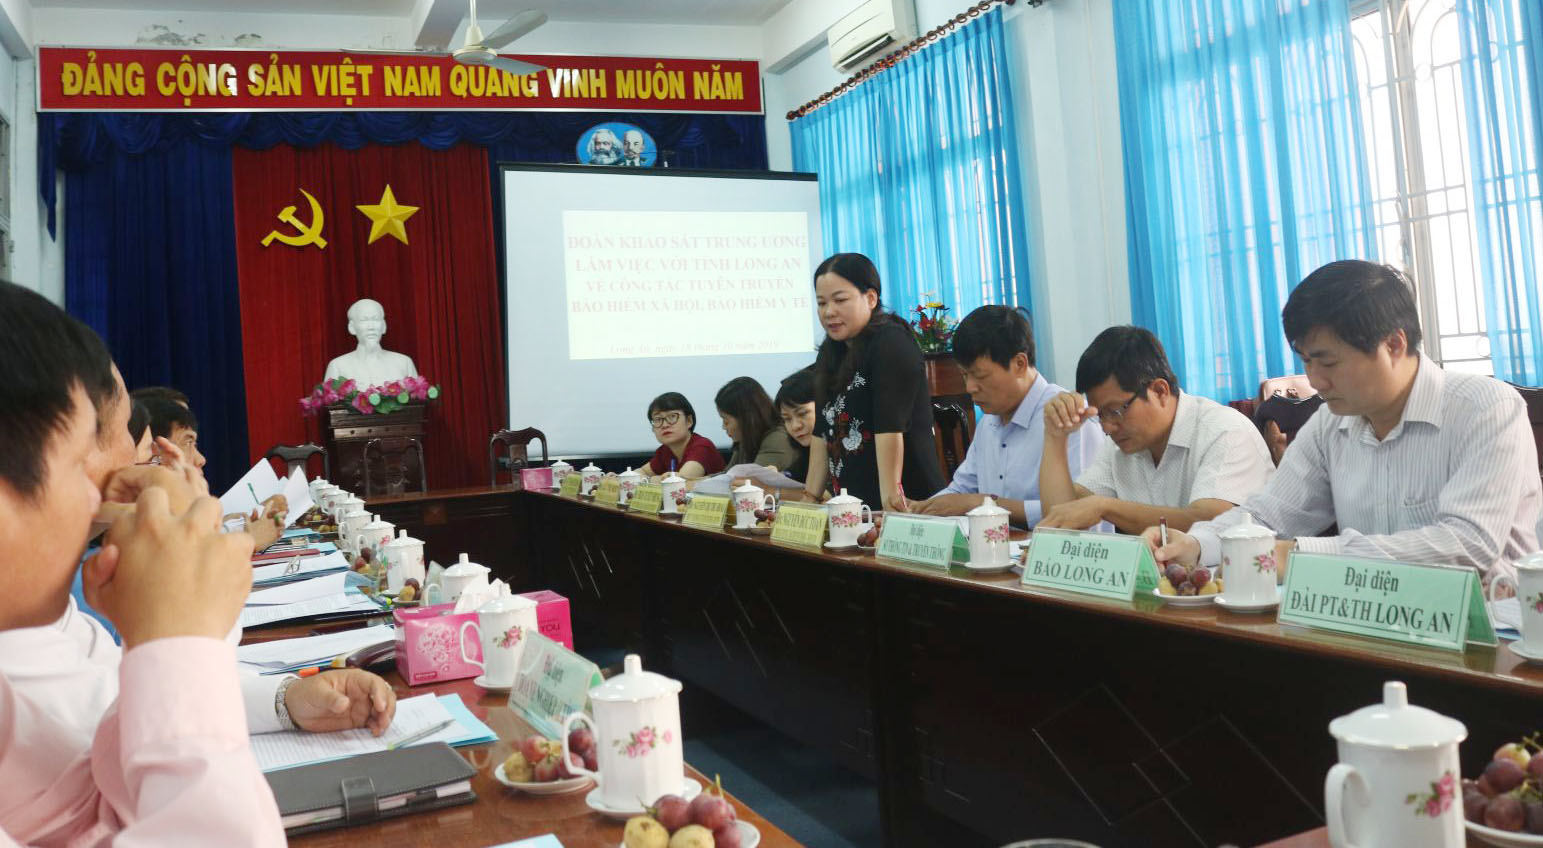 Đồng chí Nguyễn Thị Thu Hoài - Phó Vụ trưởng Vụ Tuyên truyền - Ban Tuyên giáo Trung ương đánh giá cao những kết quả thực hiện công tác tuyên truyền về BHXH, BHYT trên địa bàn Long An